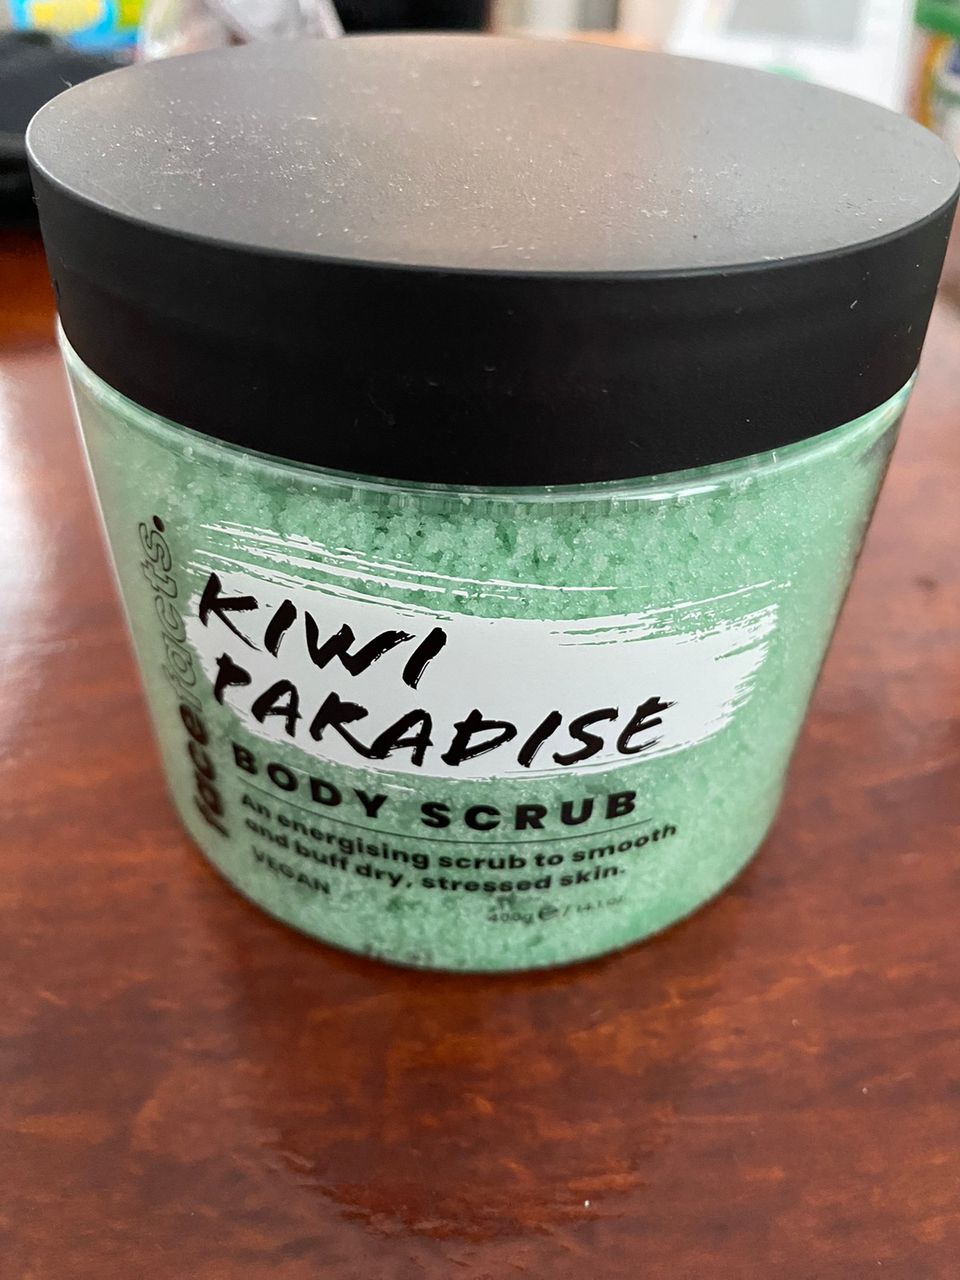 Kiwi paradise body scrub